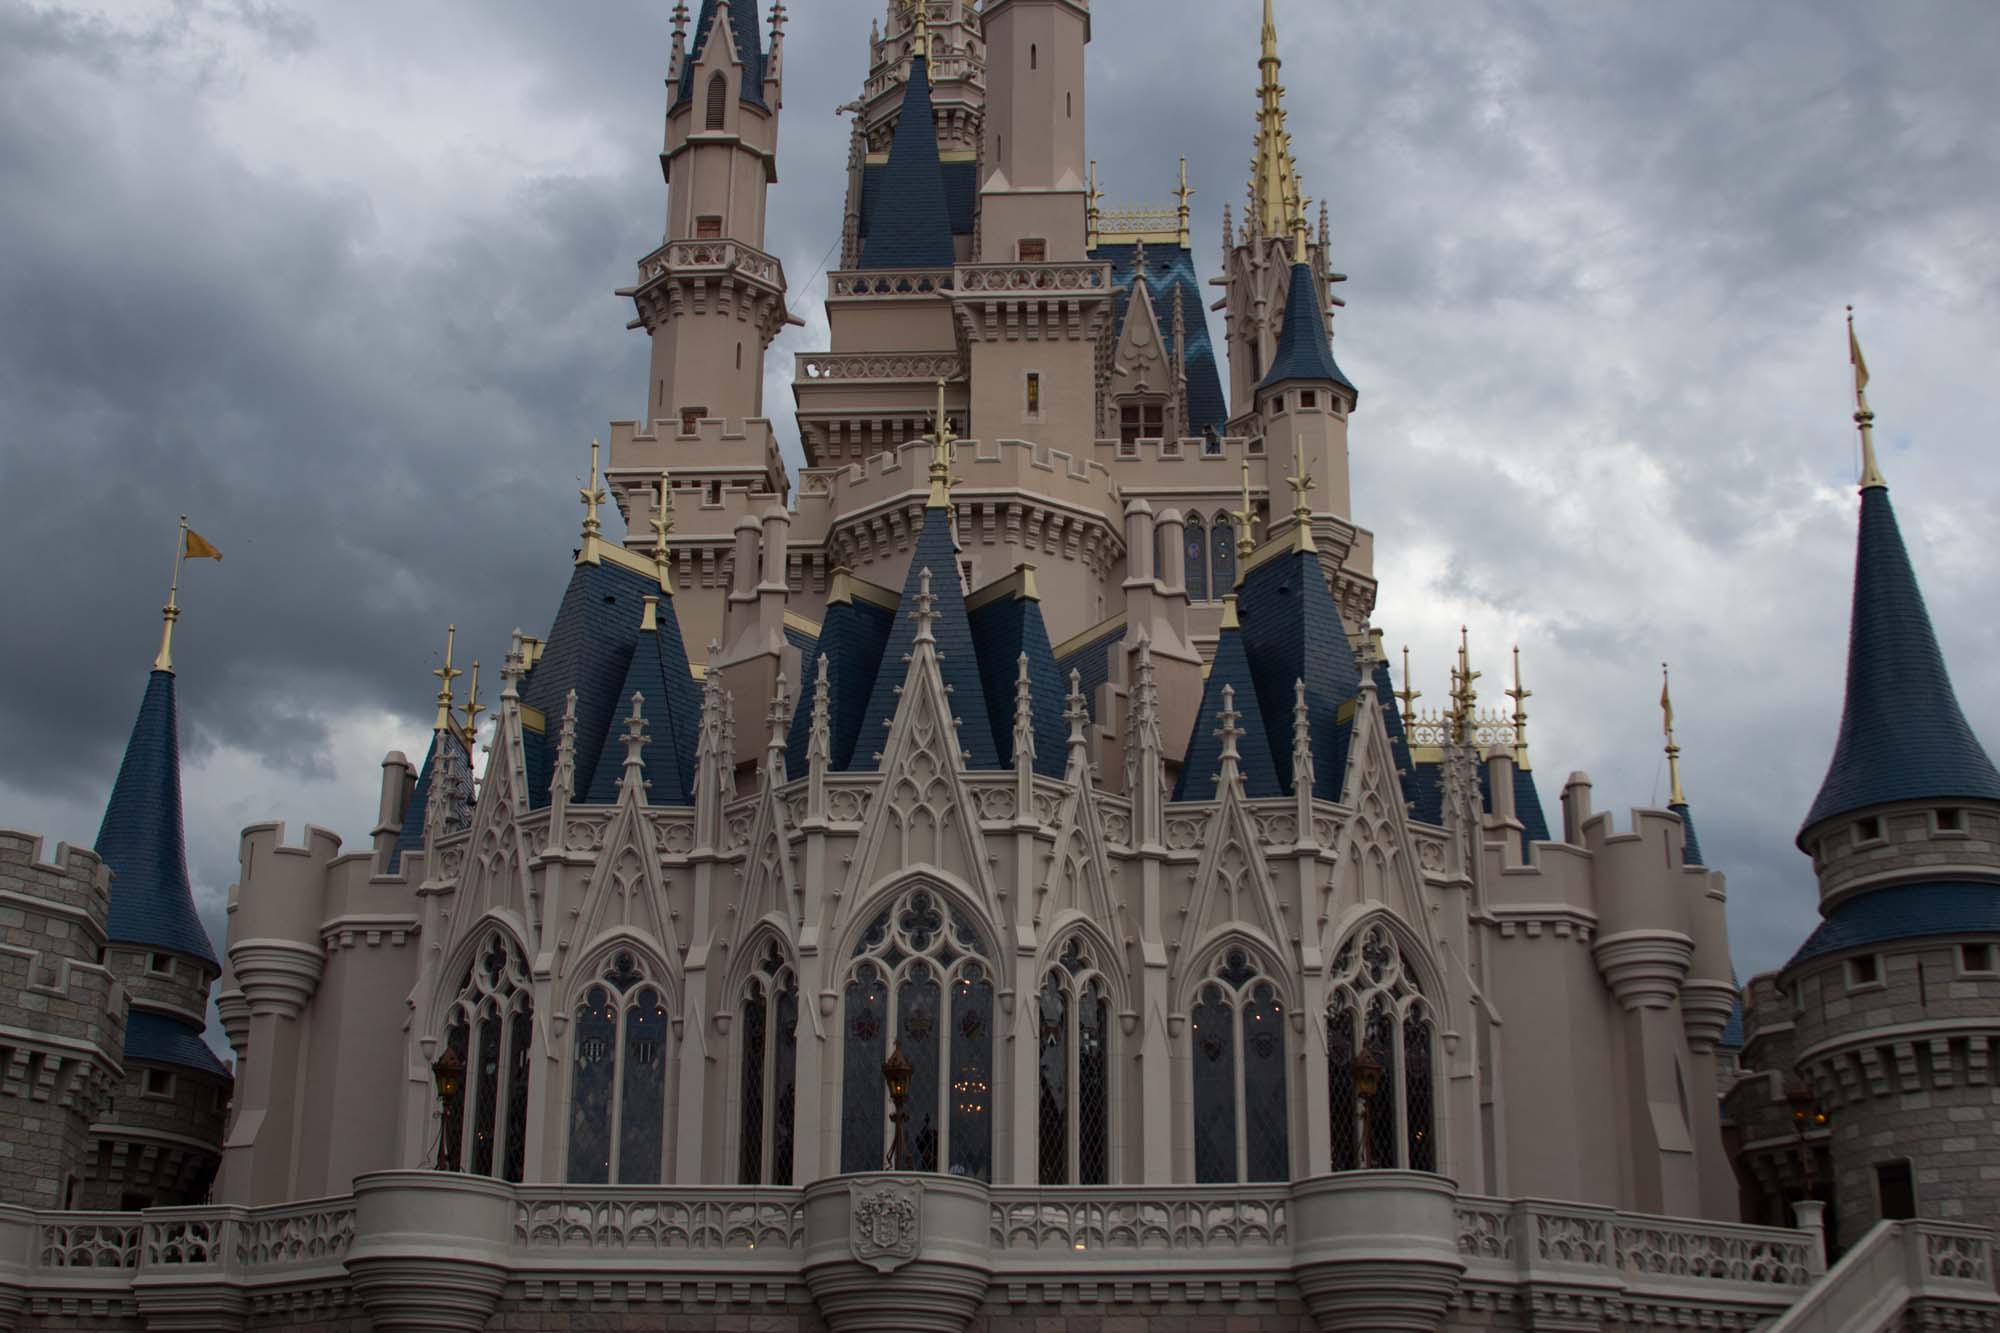 Fantasyland - Castle Windows of Cinderella's Royal Table